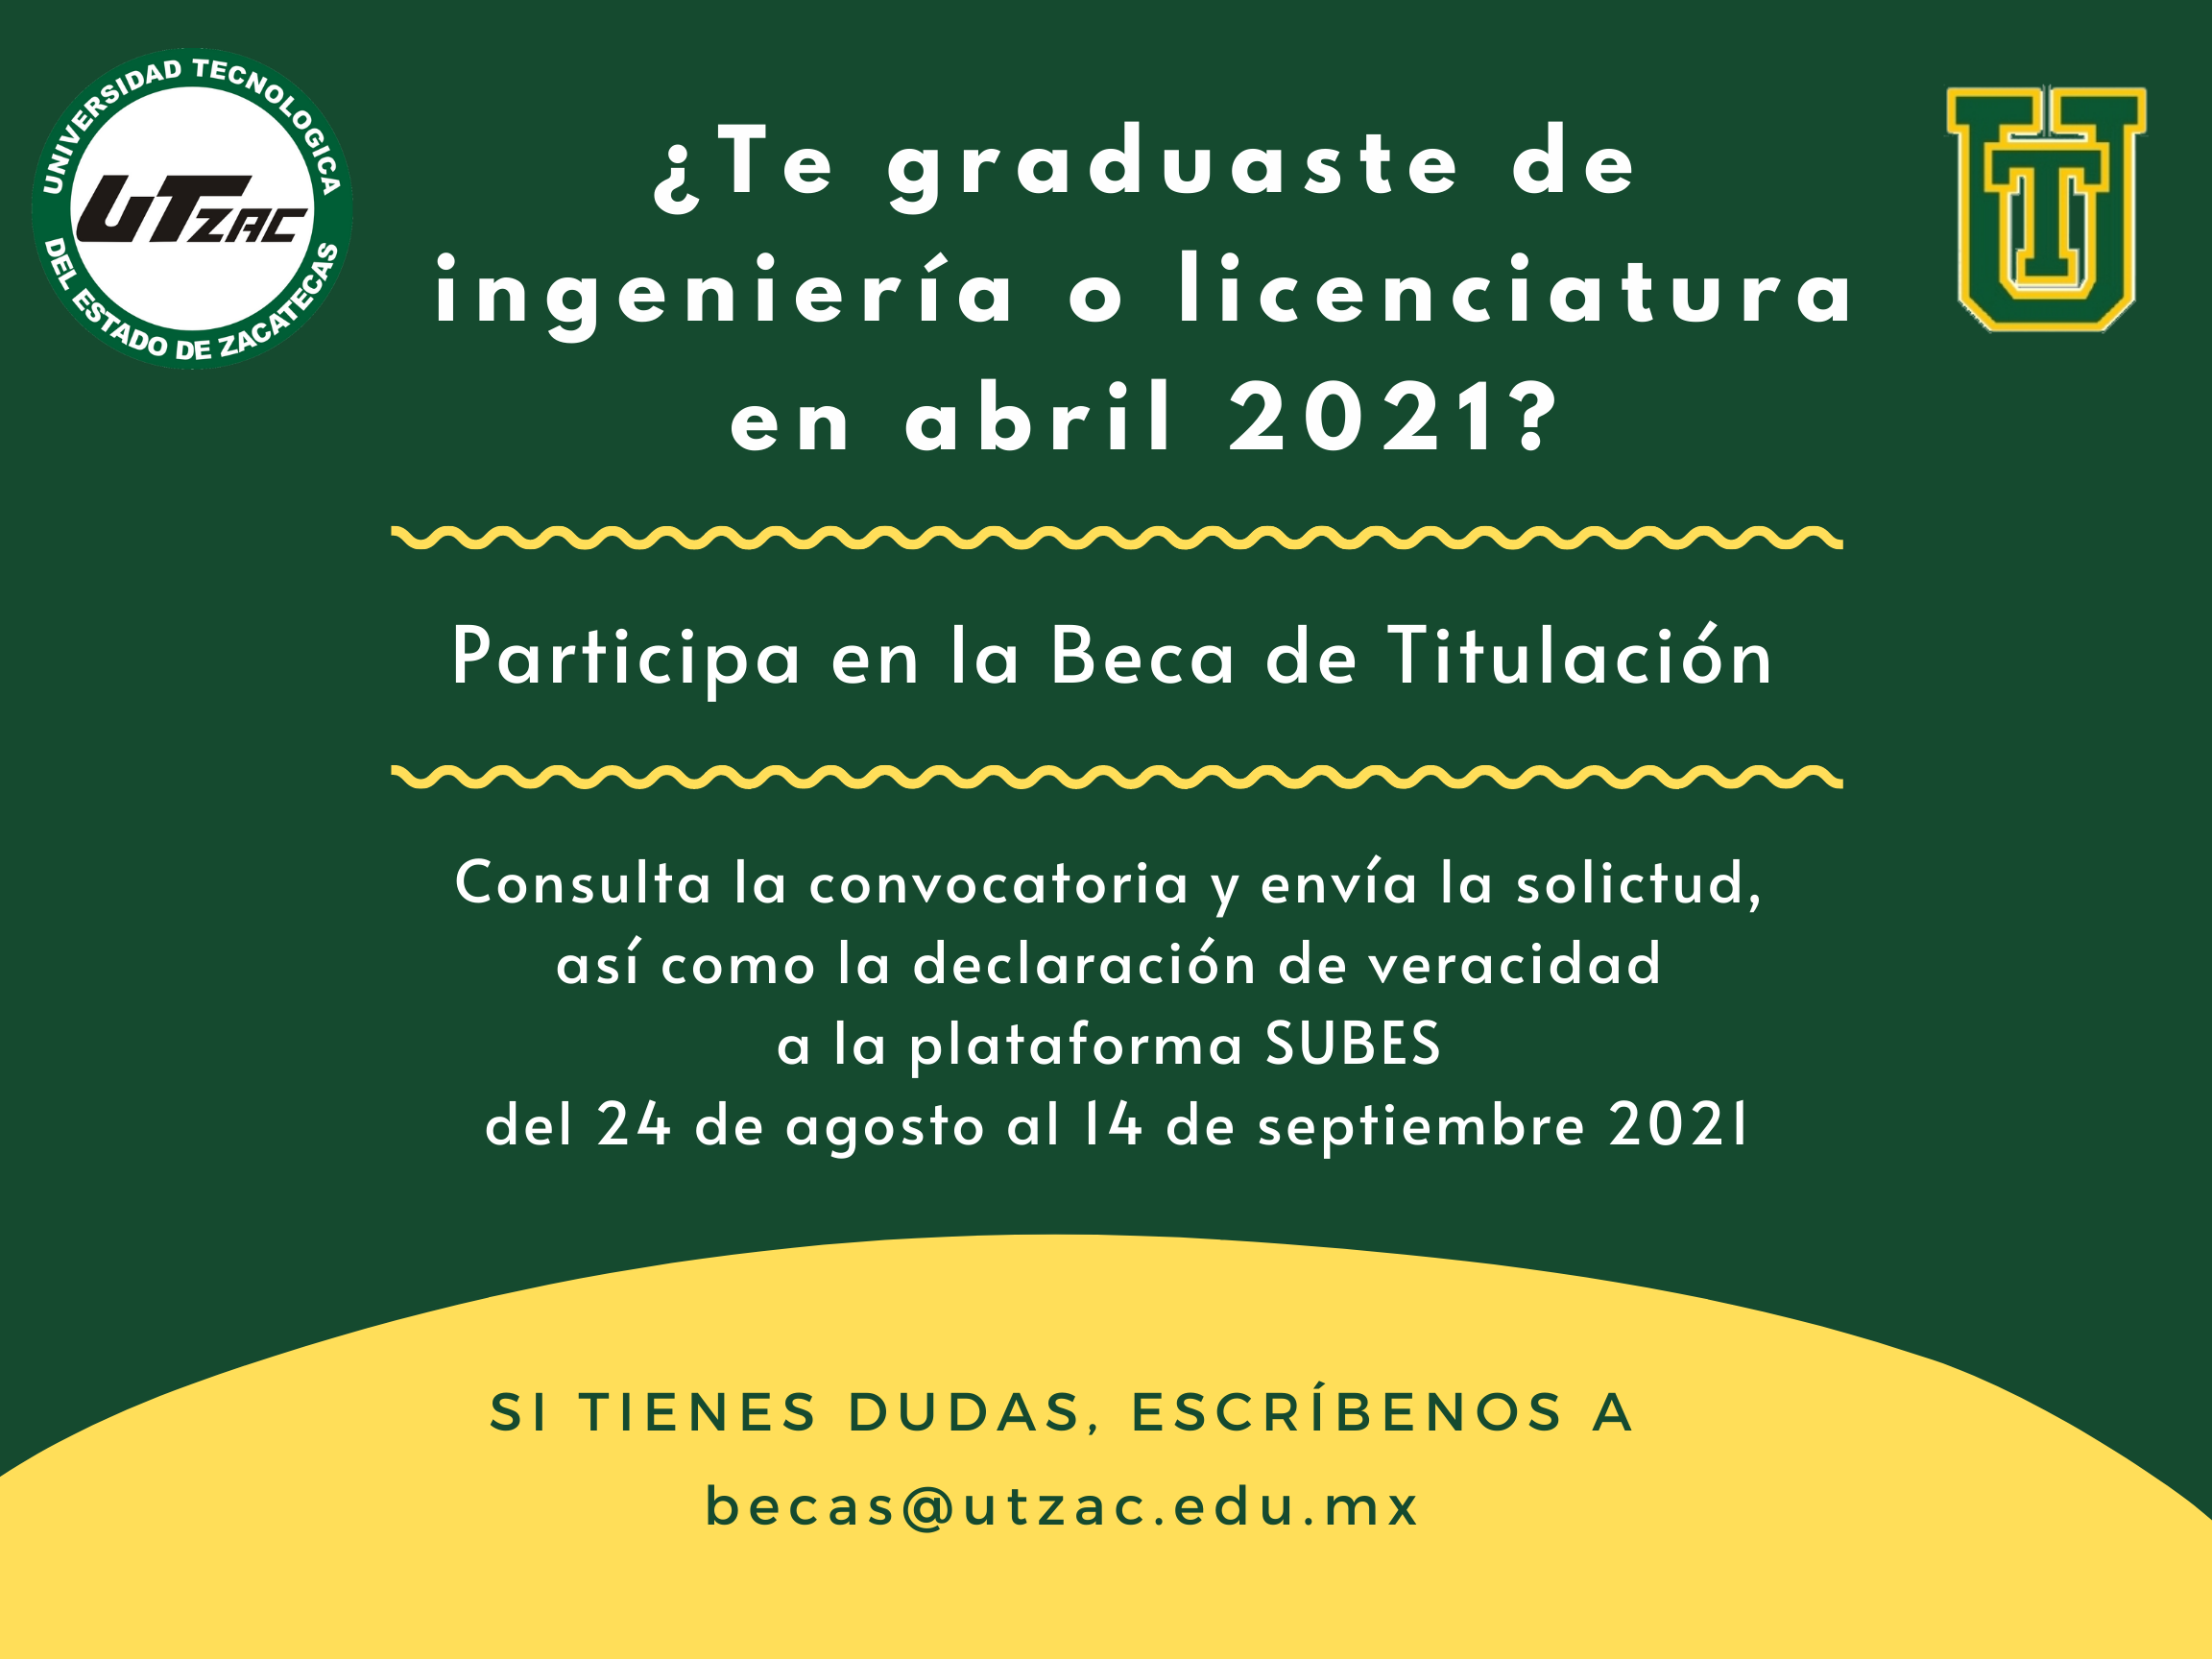 (Español) Participa en la Beca de Titulación 2021.